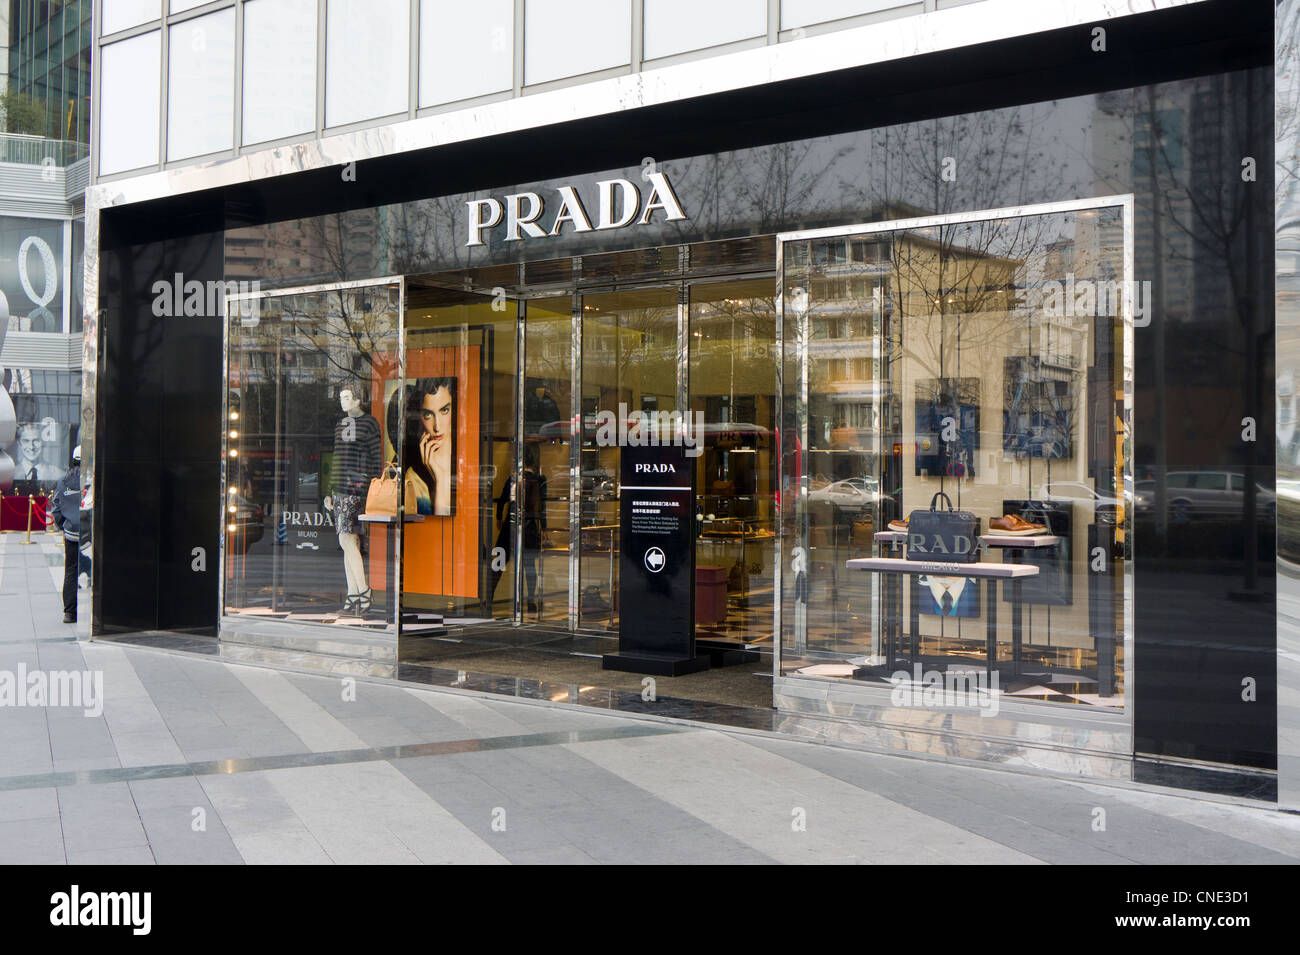 Prada shop in Chengdu, China Stock Photo